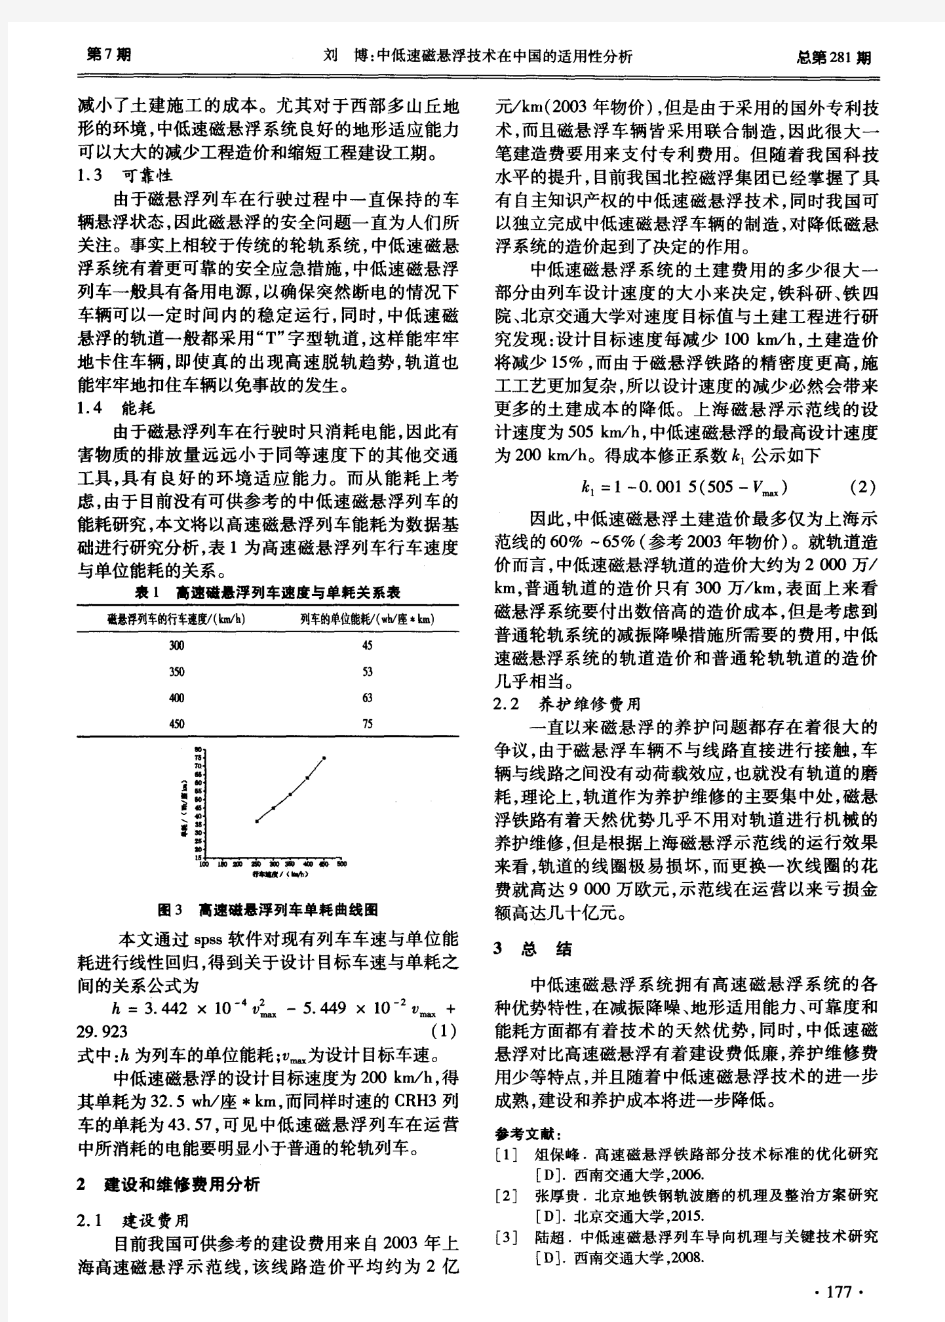 中低速磁悬浮技术在中国的适用性分析